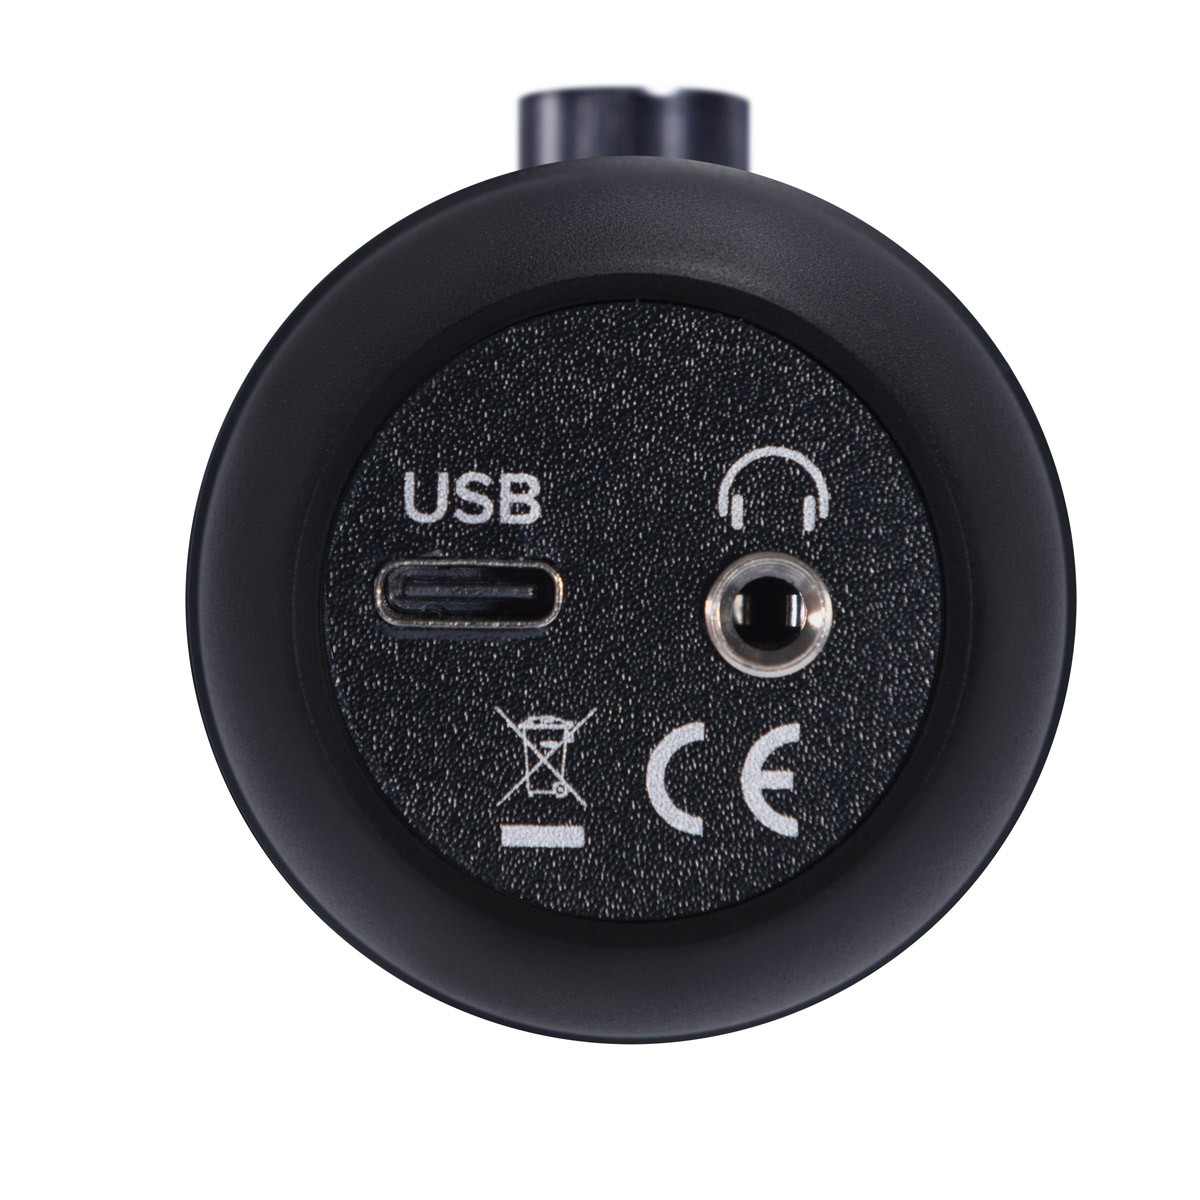 EM-USB MACKIE Microfone condensador USB p/ gravação e live 